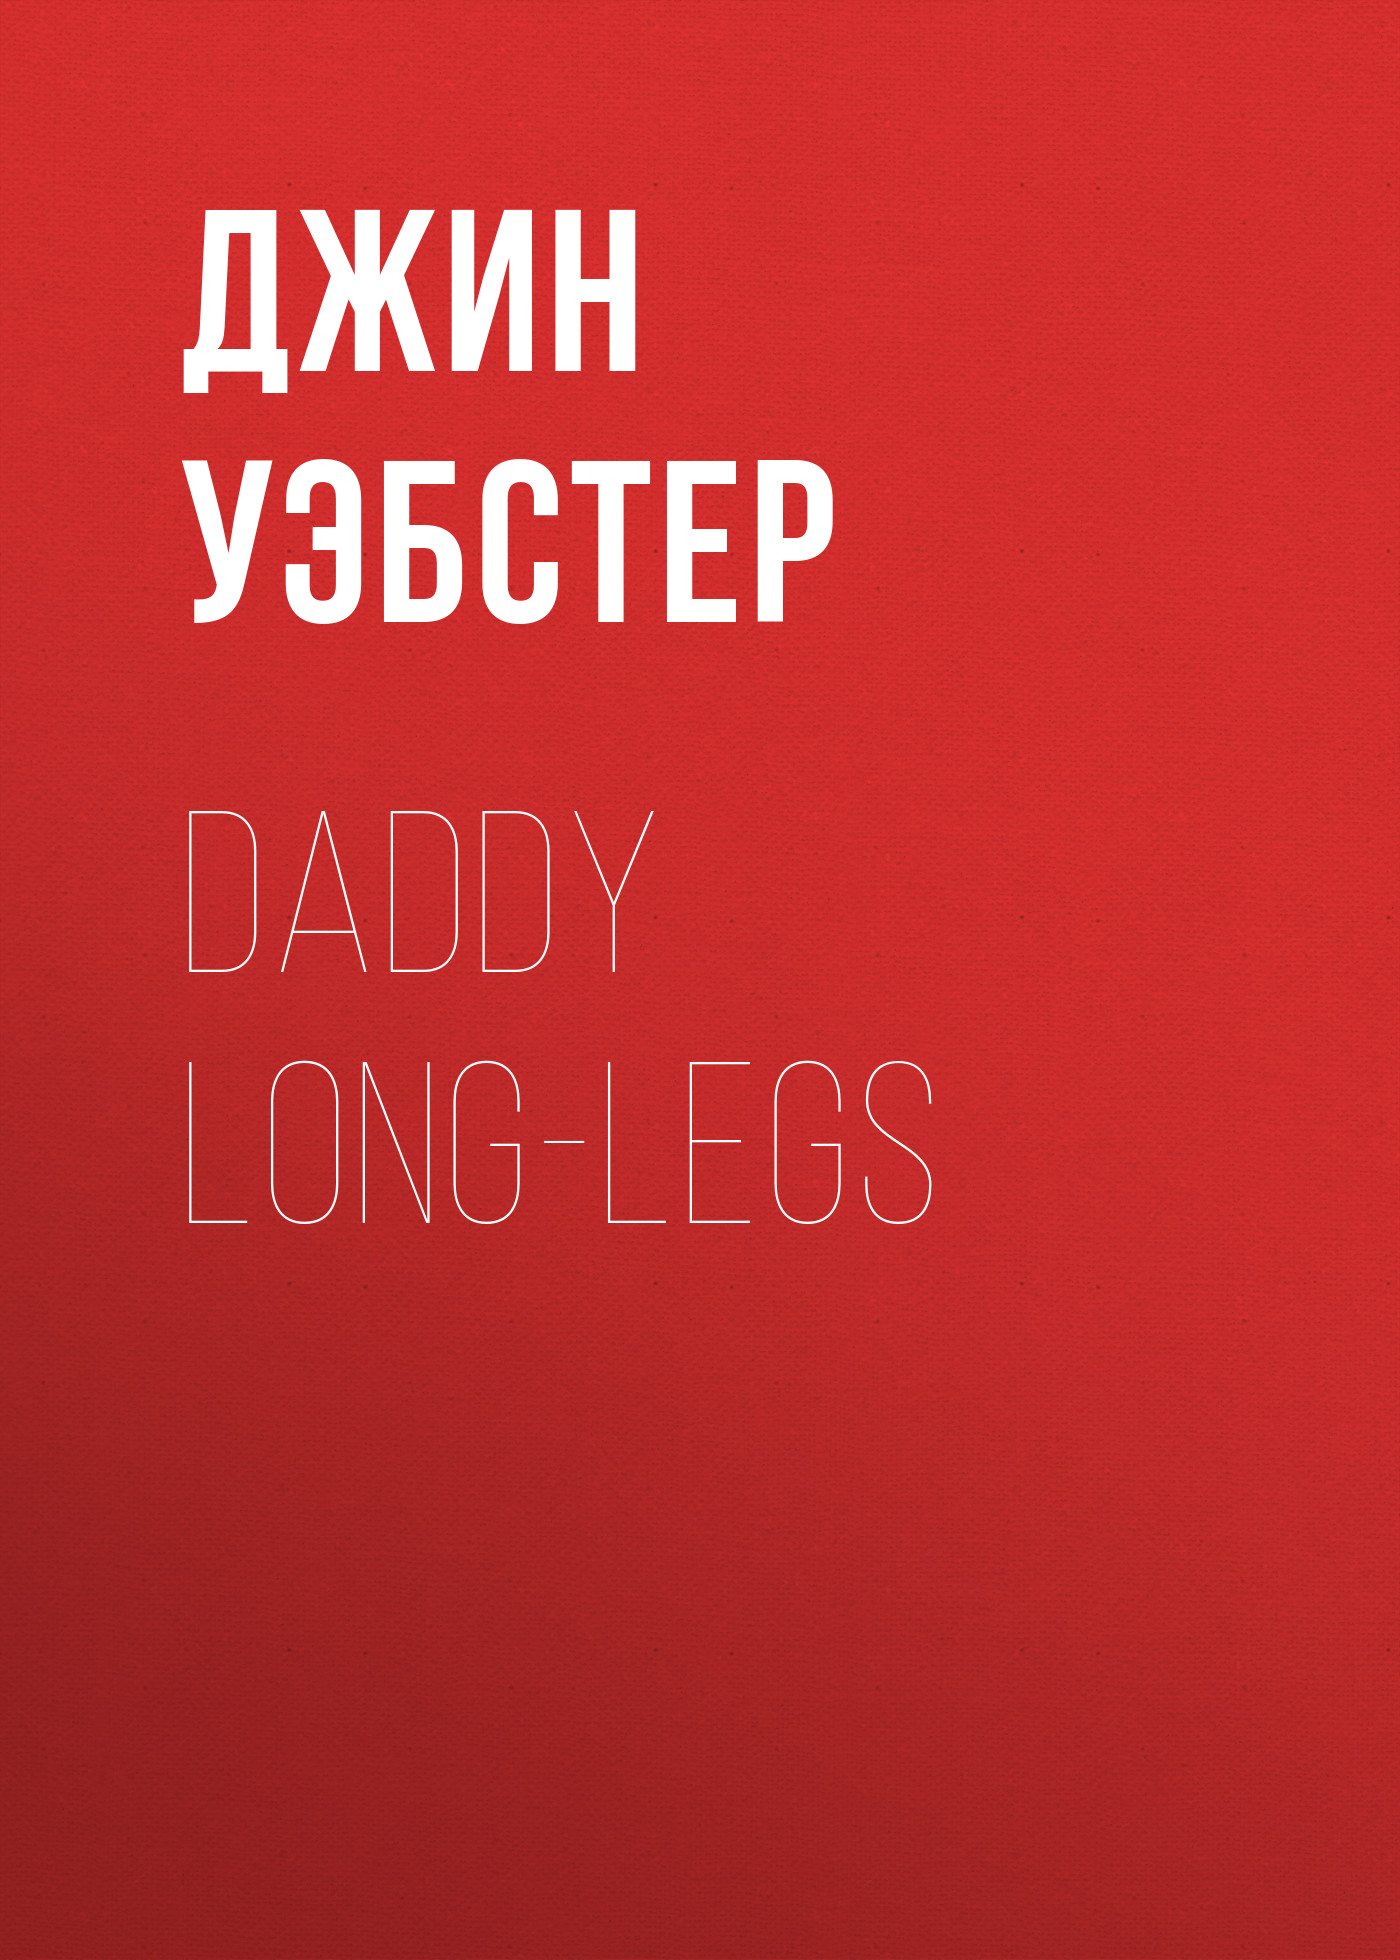 Книга Daddy Long-Legs из серии , созданная Джин Уэбстер, может относится к жанру Зарубежная драматургия, Драматургия, Зарубежная старинная литература, Зарубежная классика. Стоимость электронной книги Daddy Long-Legs с идентификатором 34336762 составляет 0 руб.